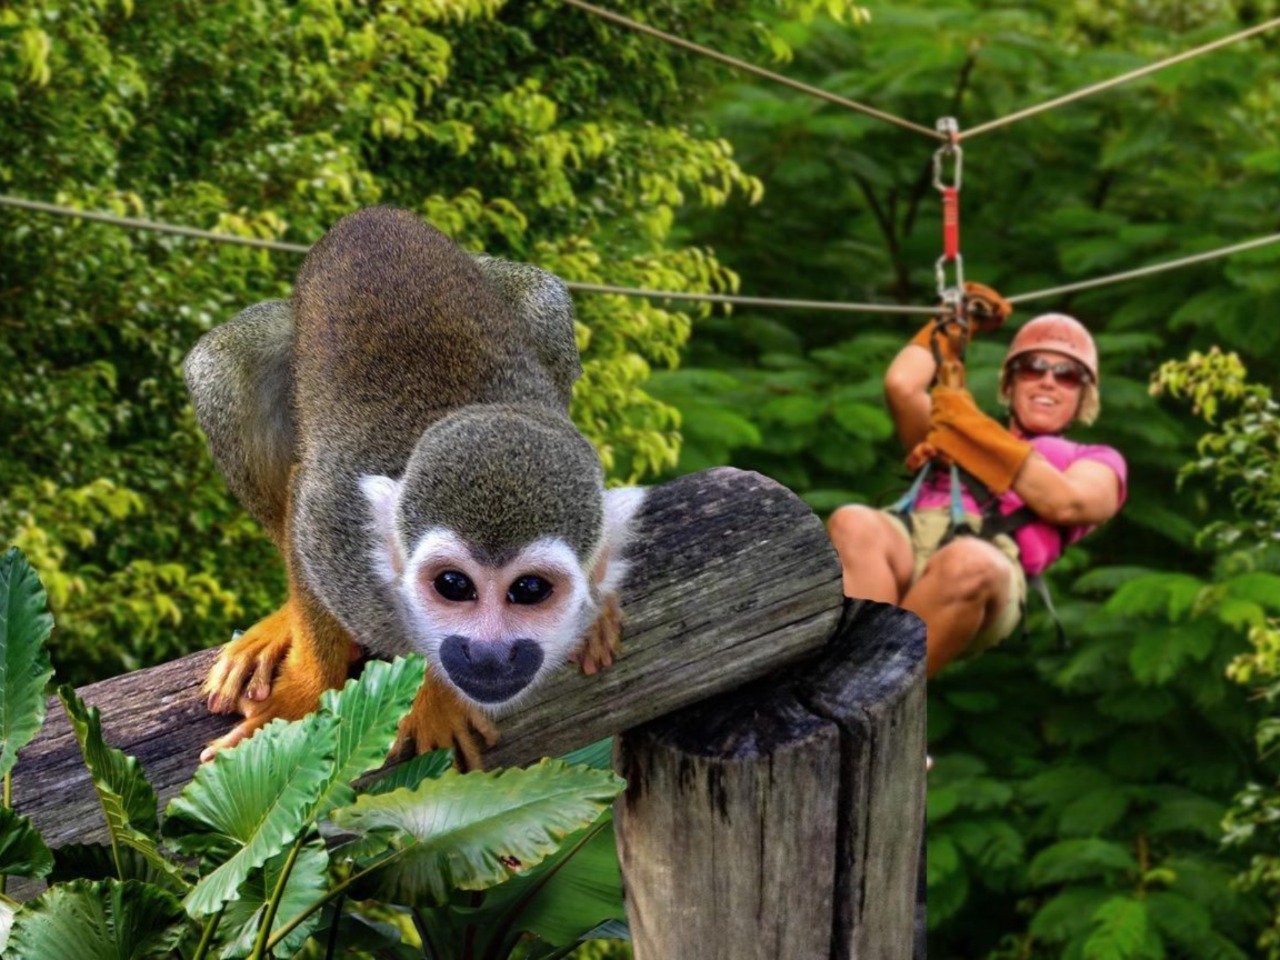 Парк Monkey jungle + замок Короля мира | Цена 470€, отзывы, описание экскурсии